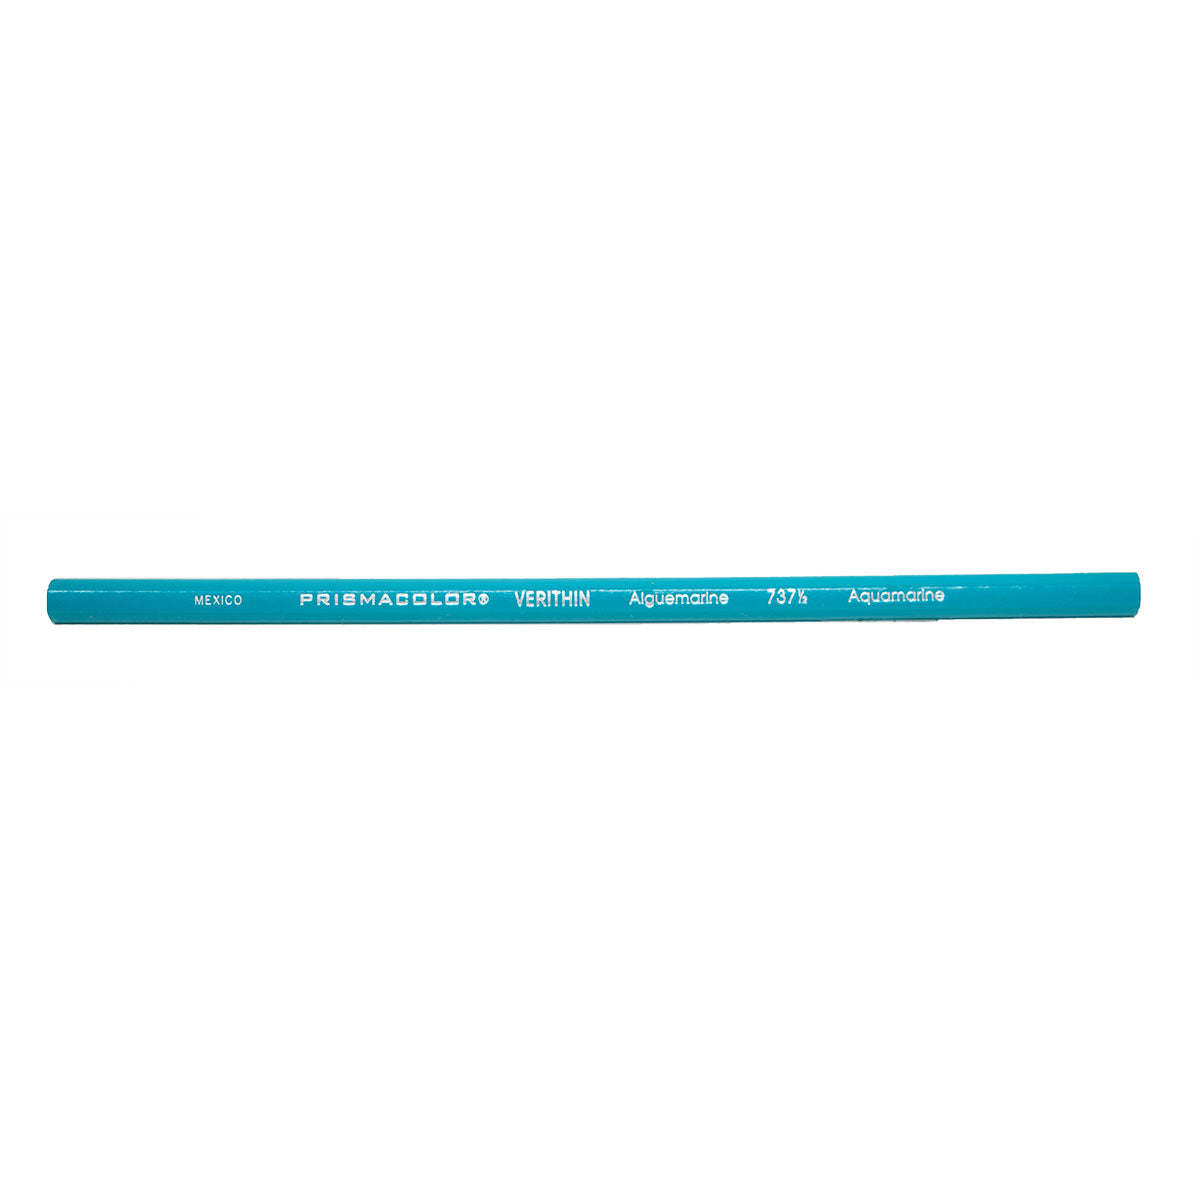 Prismacolor Verithin Aquamarine 737 1/2 Colored Pencils  Prismacolor Pencils